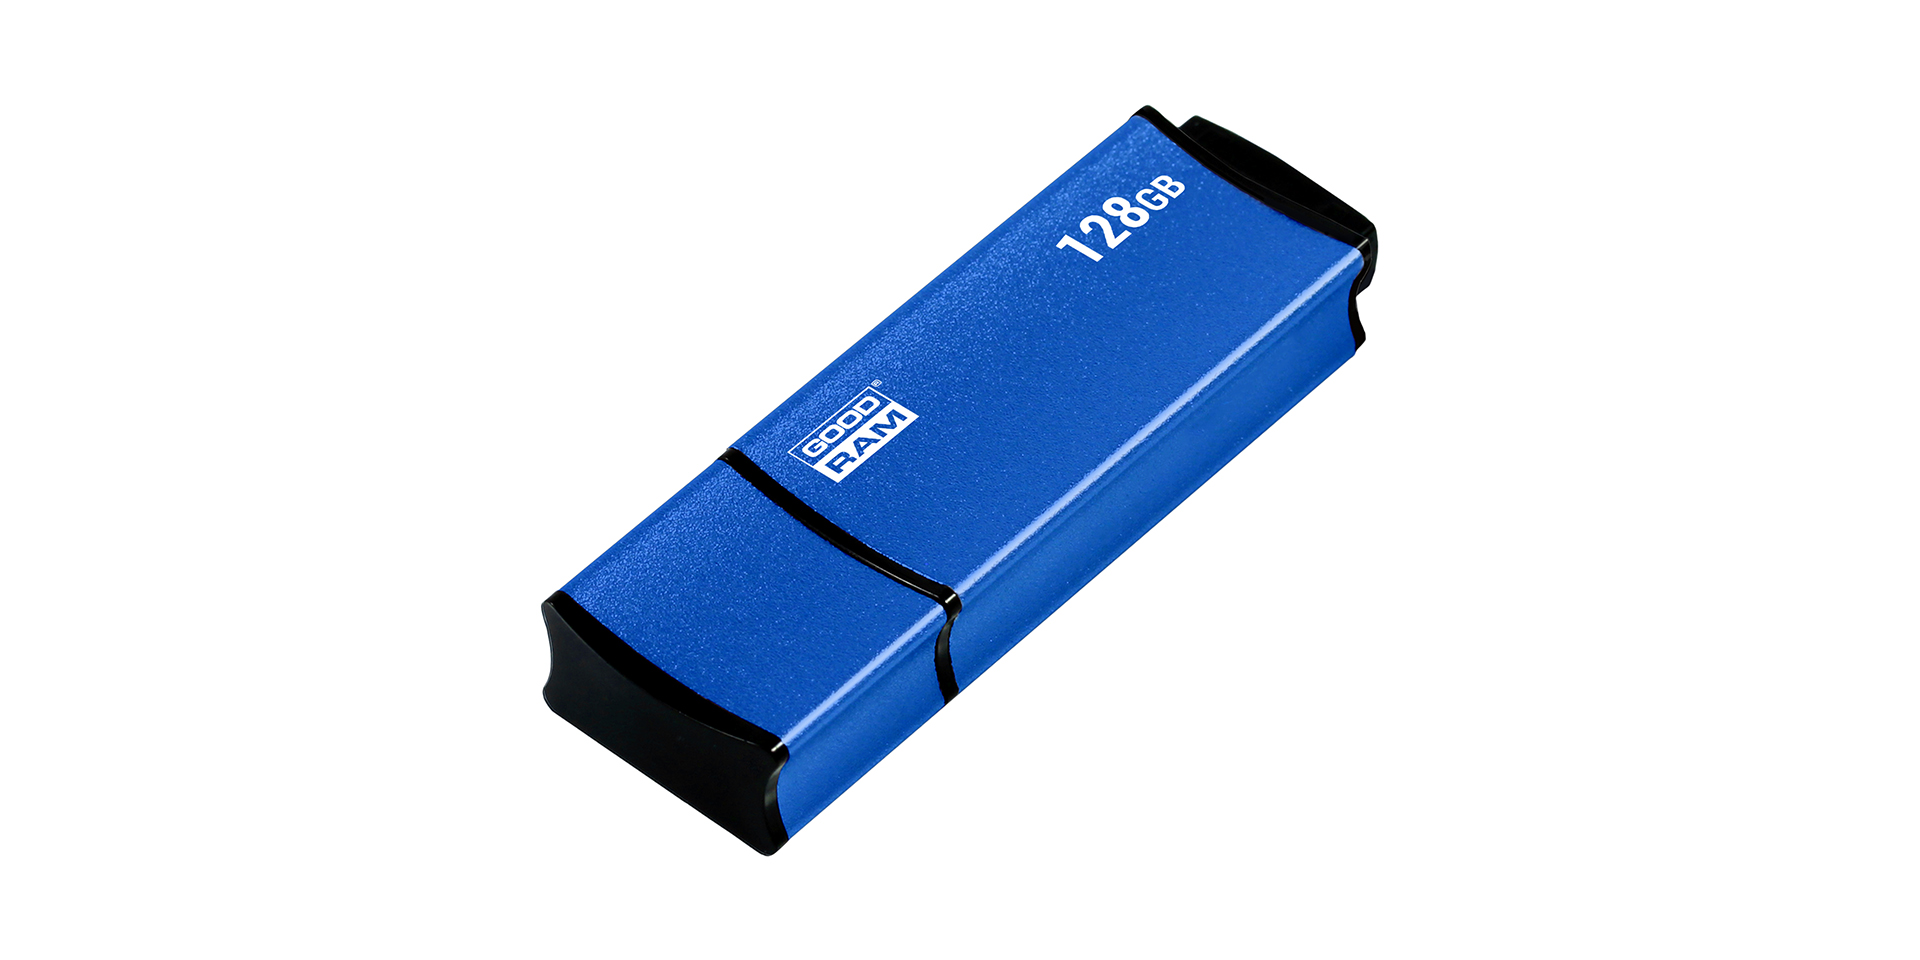 USB blaue gehäuse